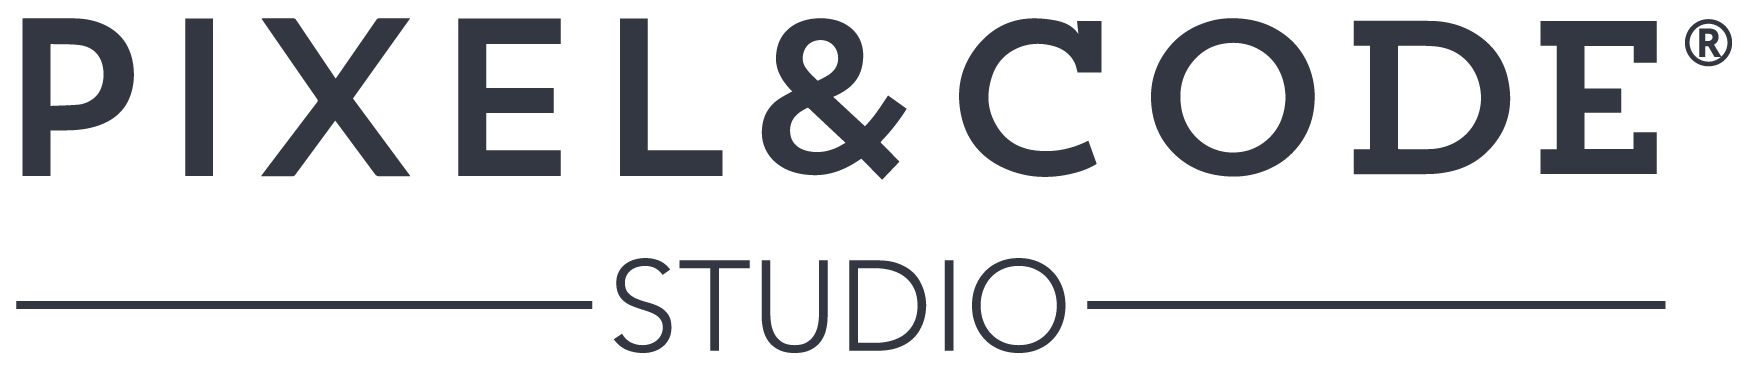 Pixel and Code Studio